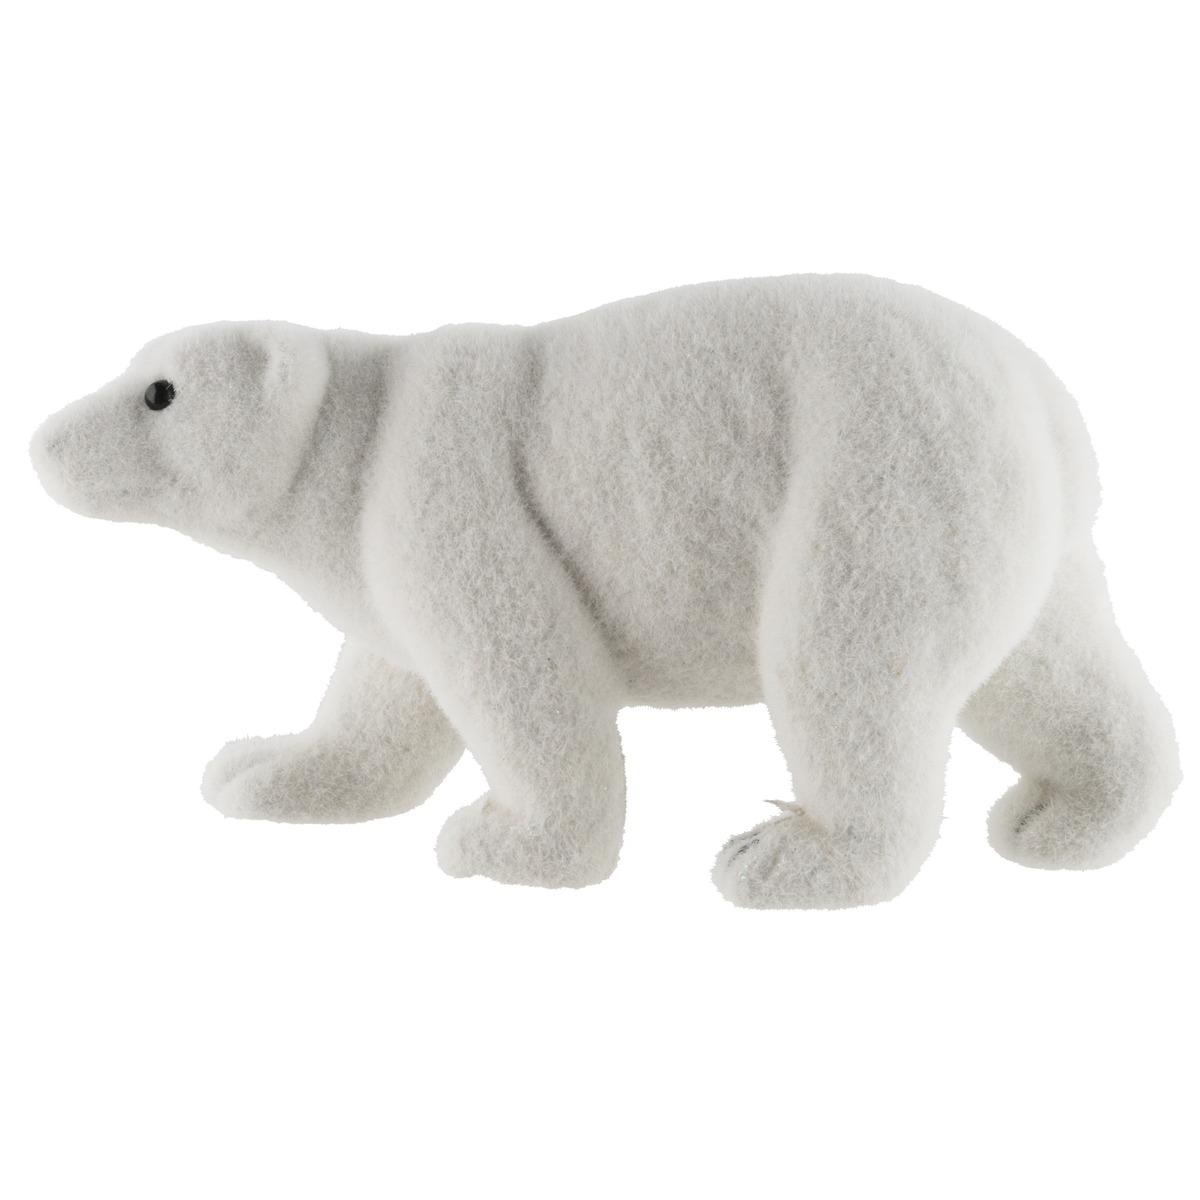 Ours polaire - 30 x 20 cm - Gris et blanc